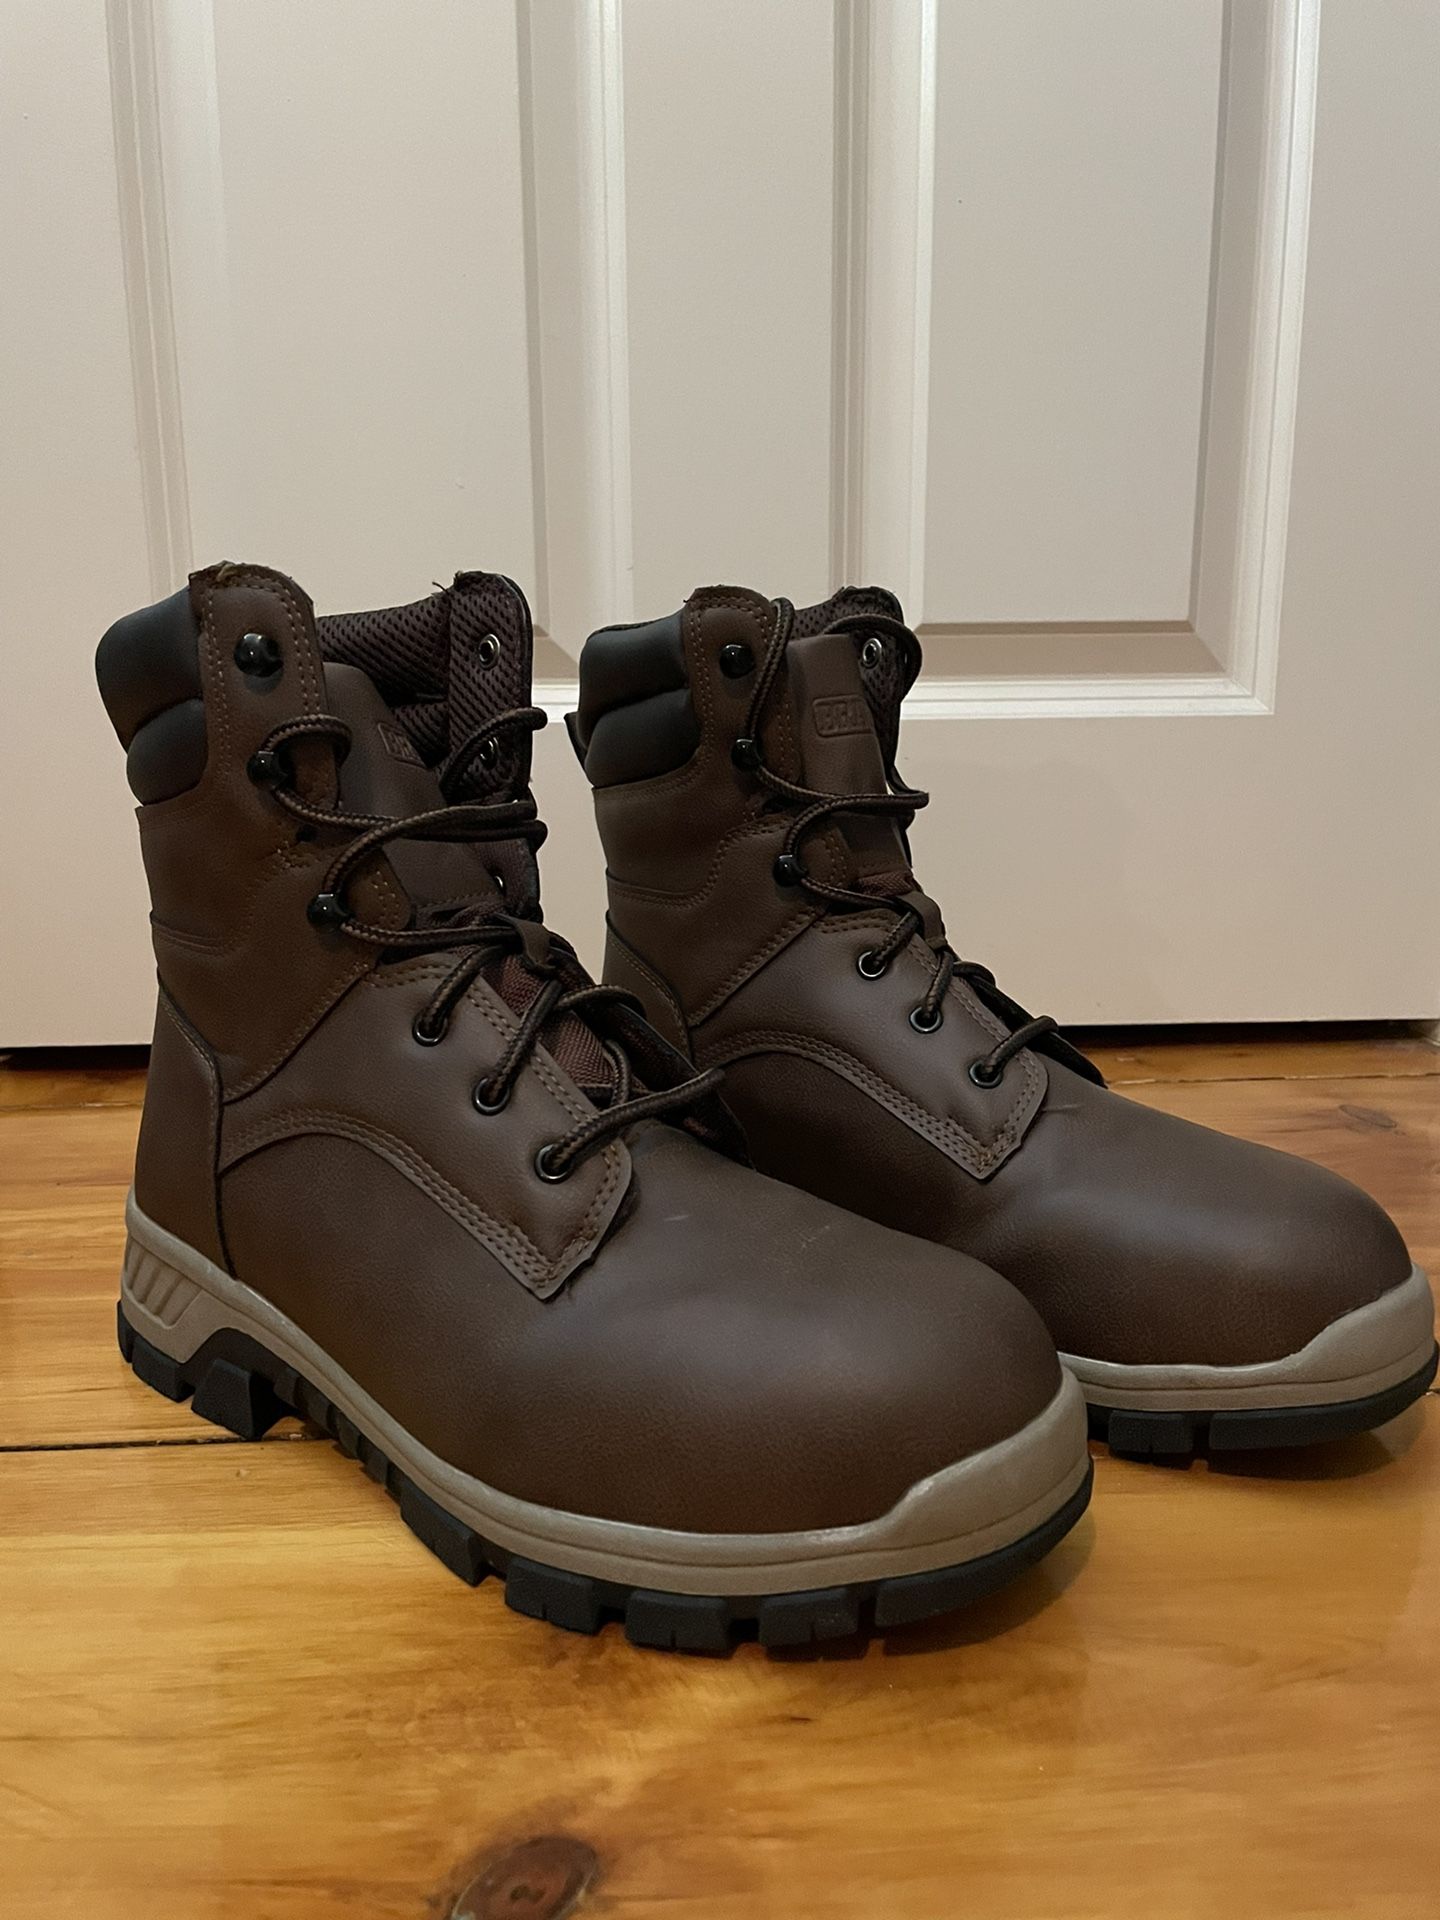 Men’s Steel Toe Work Boots